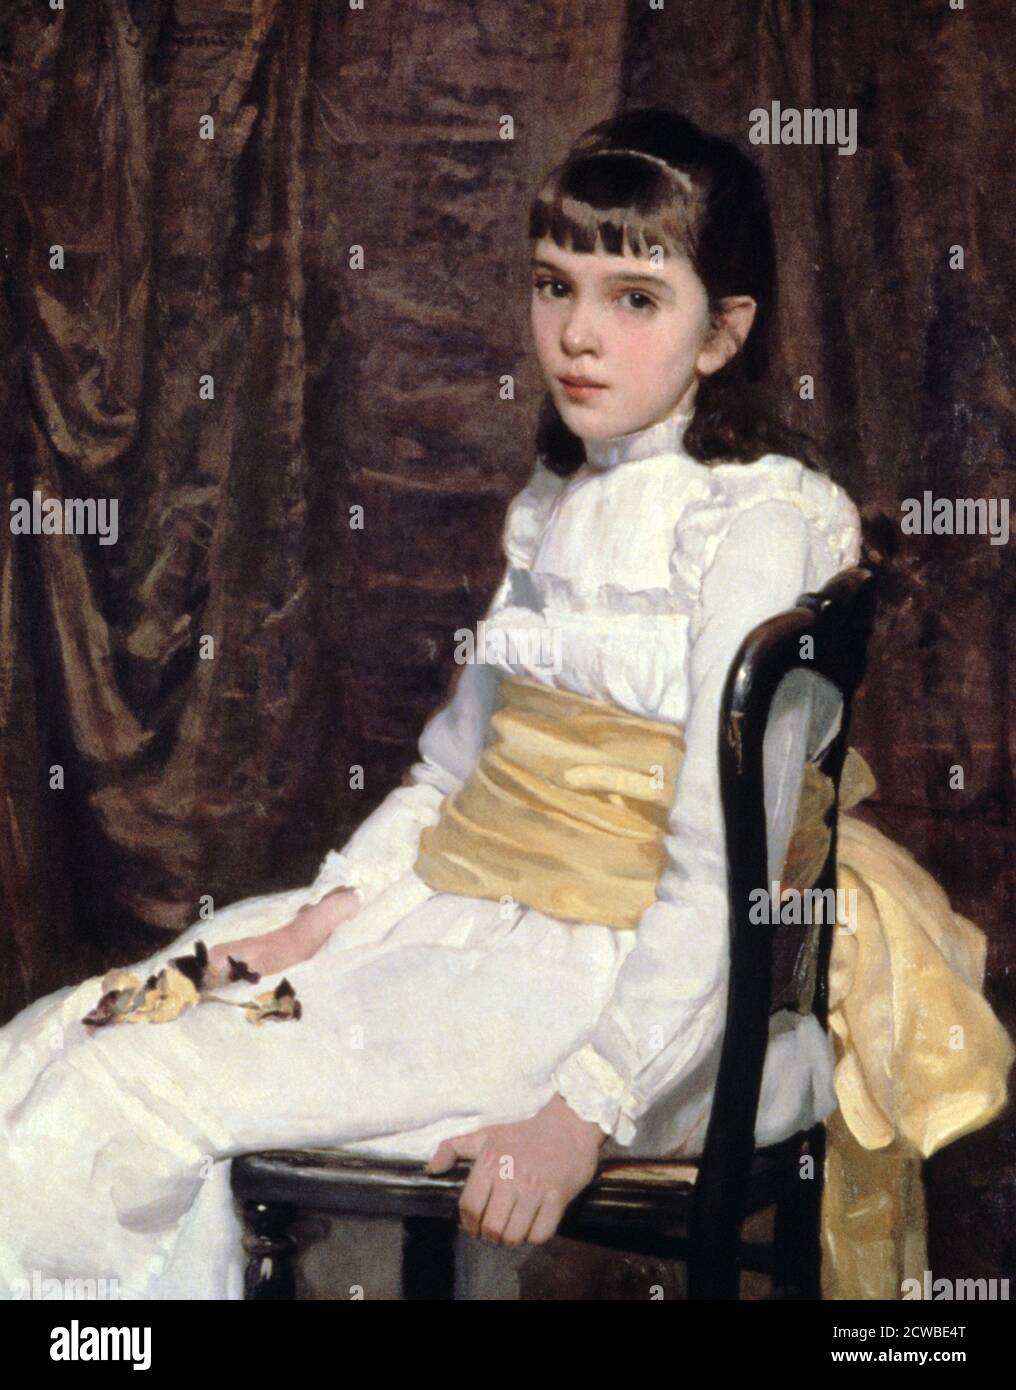 A Little Girl', 1887. Künstler: Cecilia Beaux. Cecilia Beaux (1855-1942) war eine amerikanische Gesellschaft porträtiert, in der Natur von John Singer Sargent. Ihre Porträts haben oft ein Gefühl von psychologischer Unruhe, das durch die ungewöhnliche Platzierung von Figuren in Beziehung zueinander verstärkt wird. Stockfoto